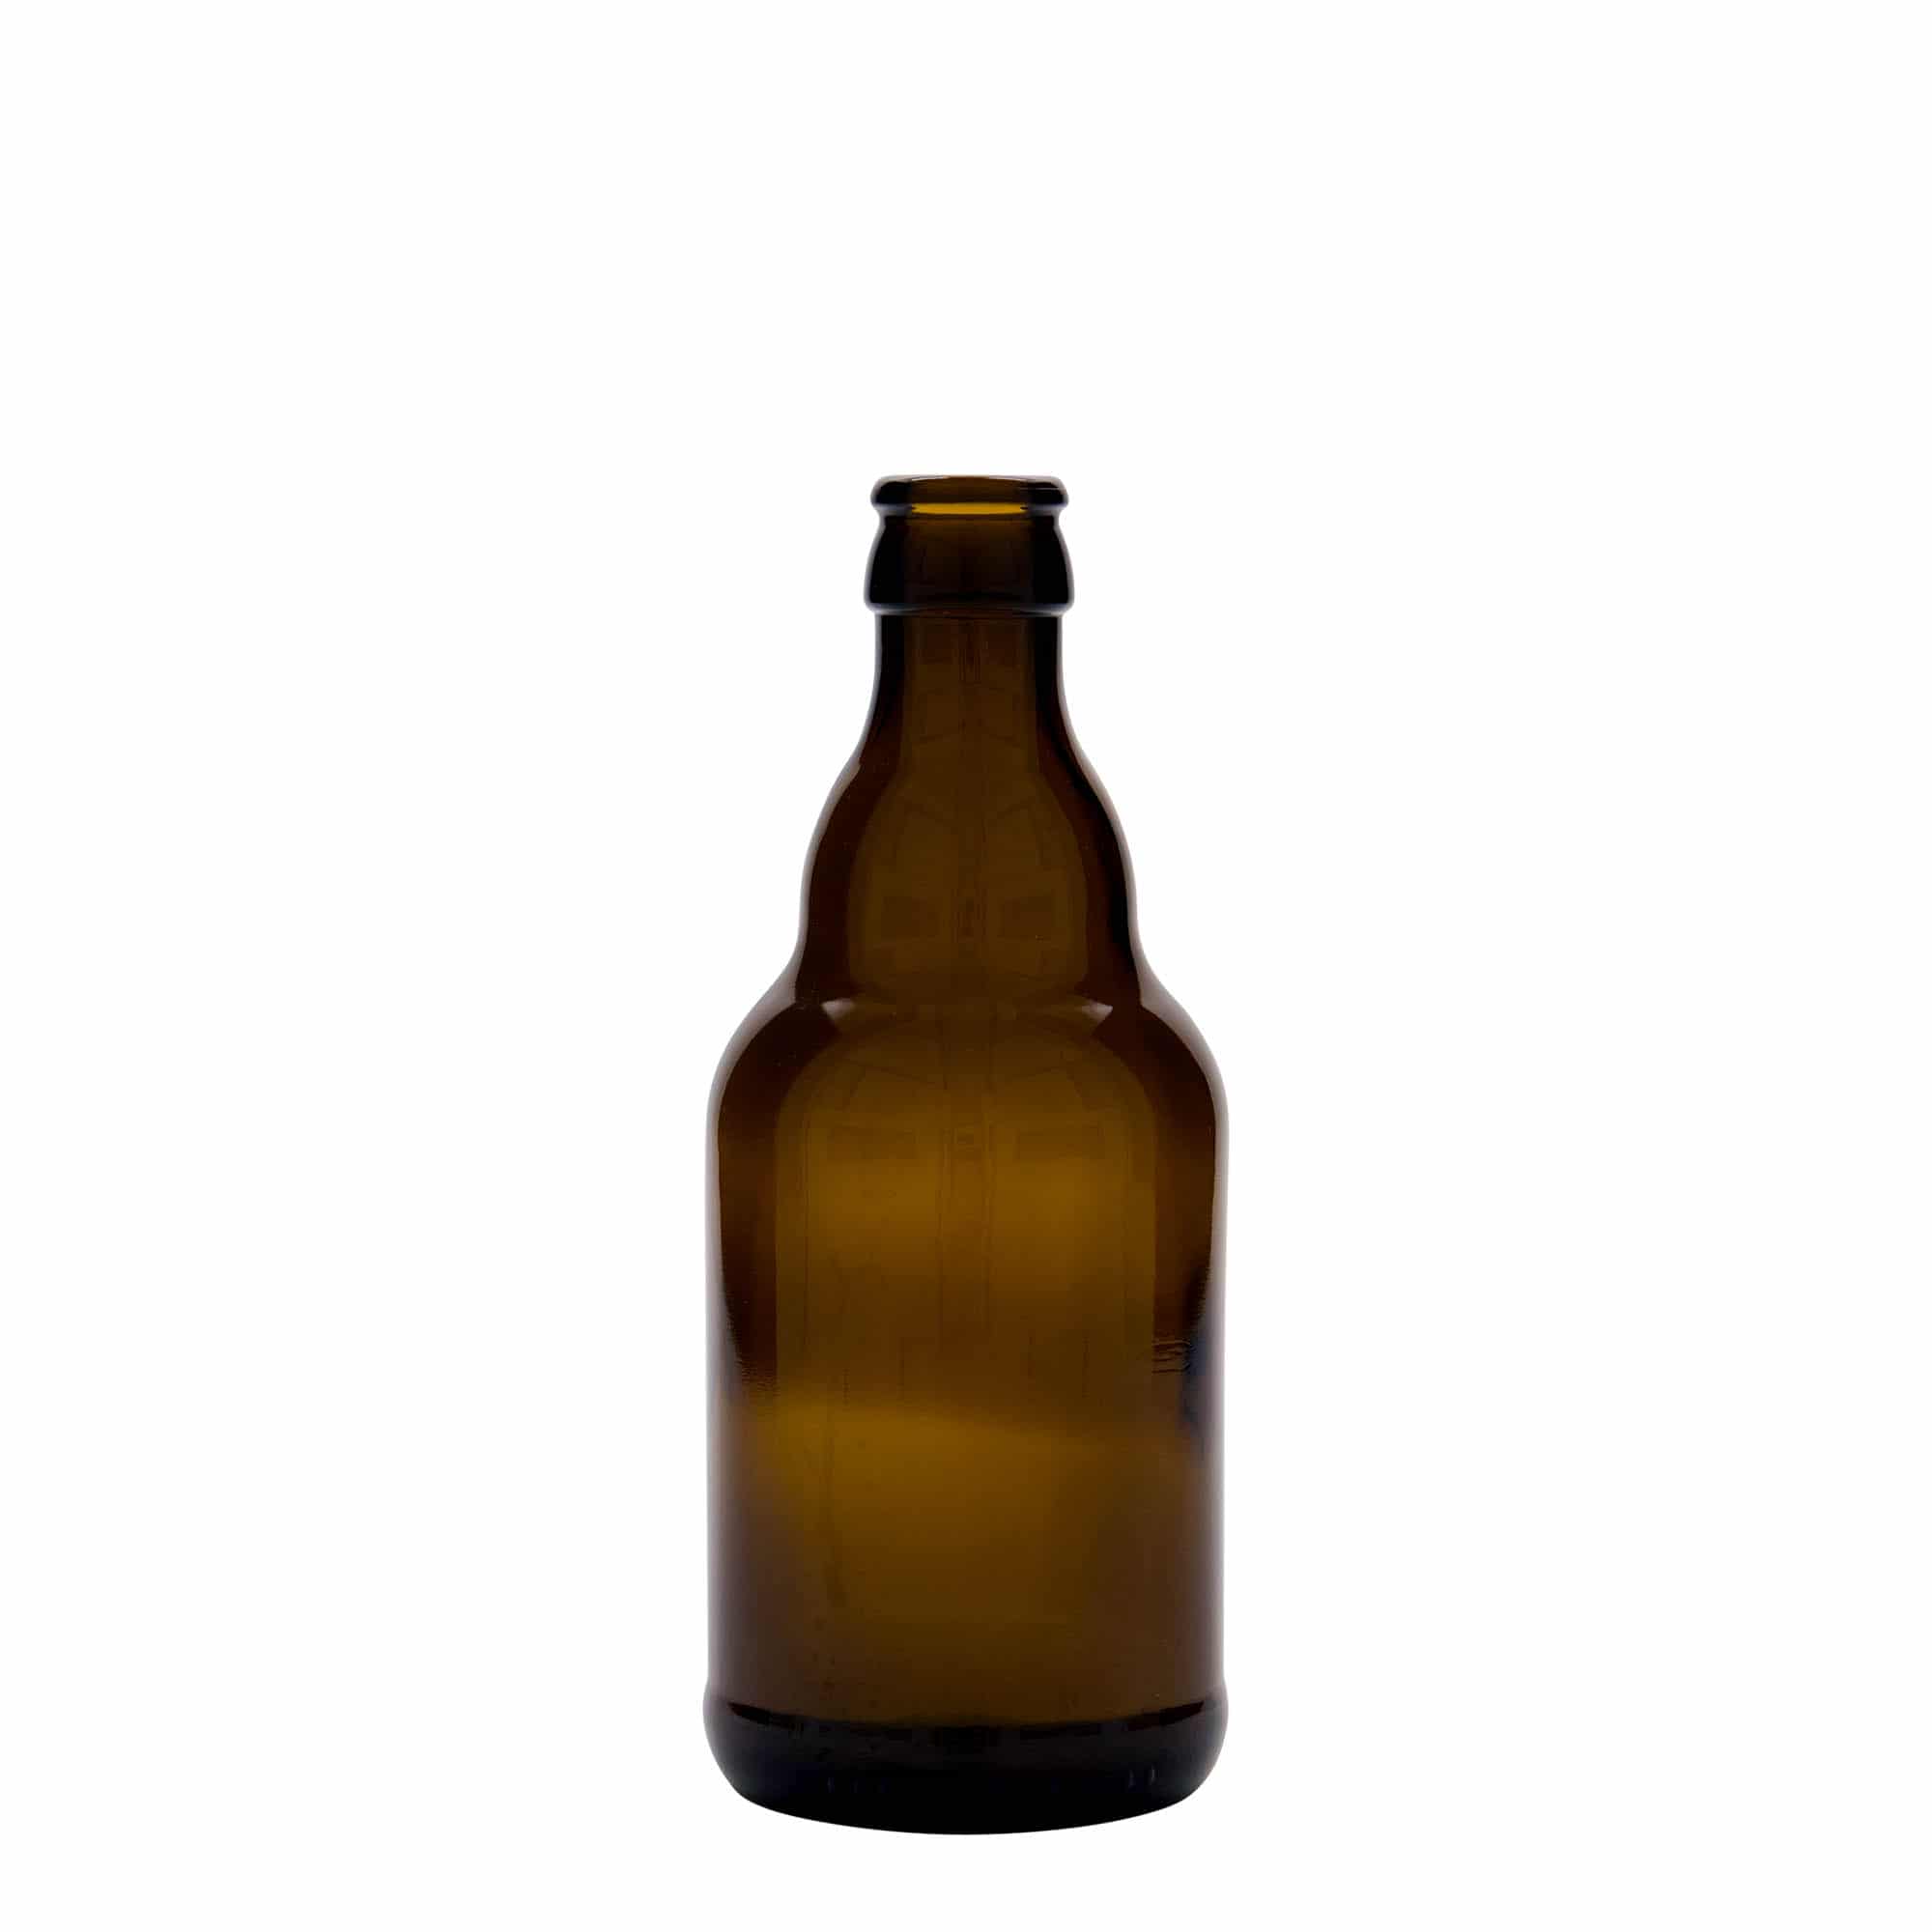 330 ml beer bottle 'Steinie', glass, brown, closure: crown caps